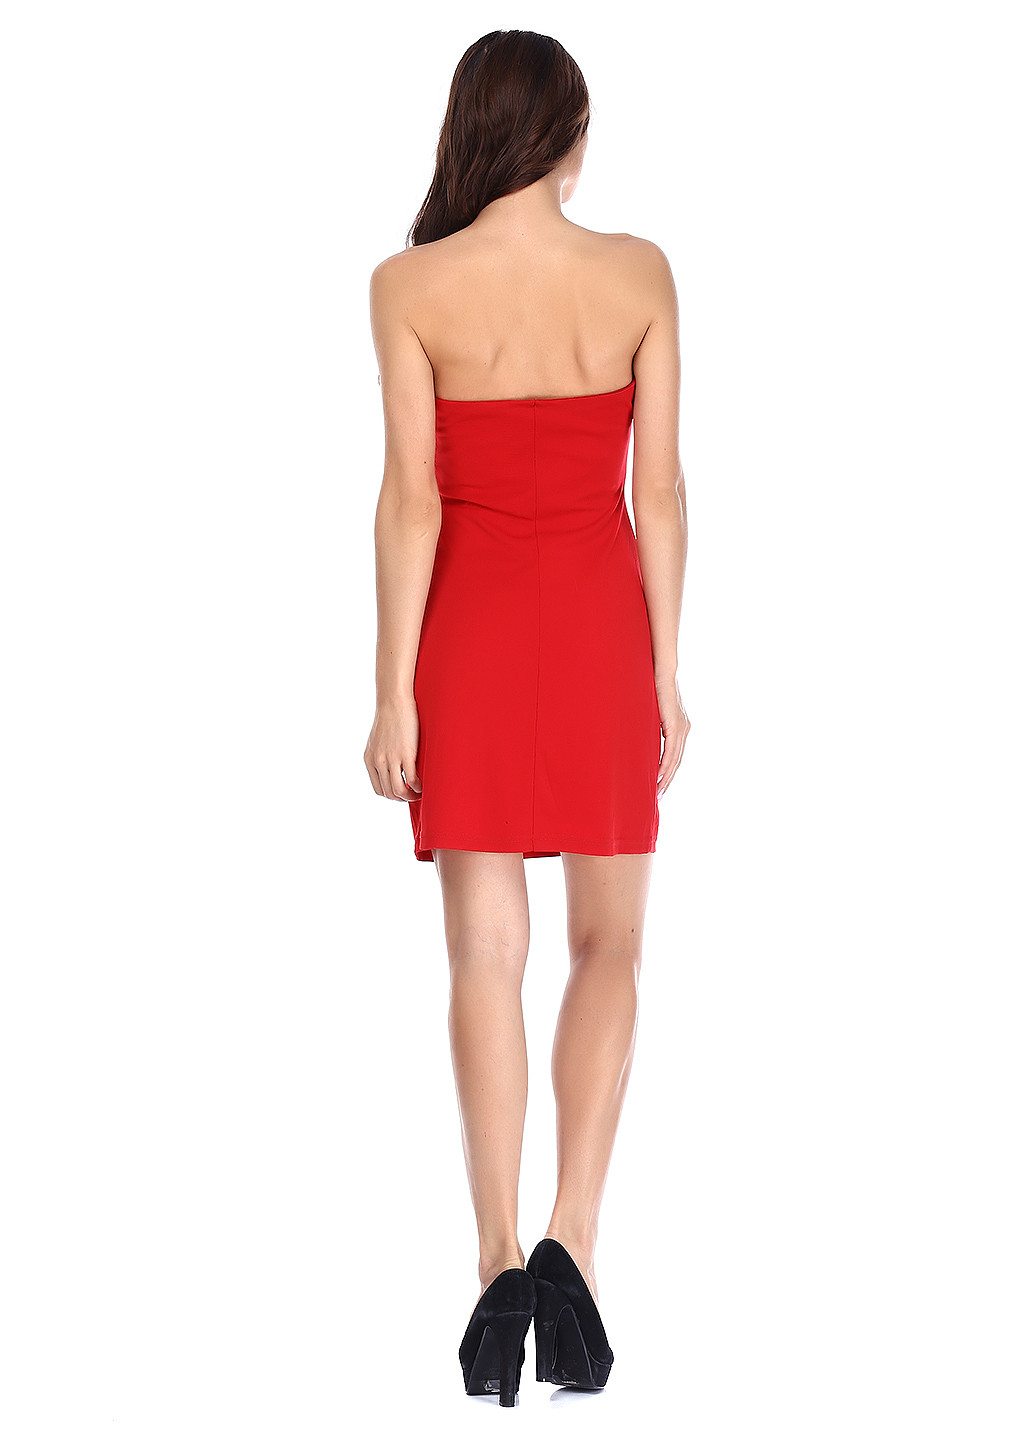 Красное коктейльное платье футляр Morgan однотонное